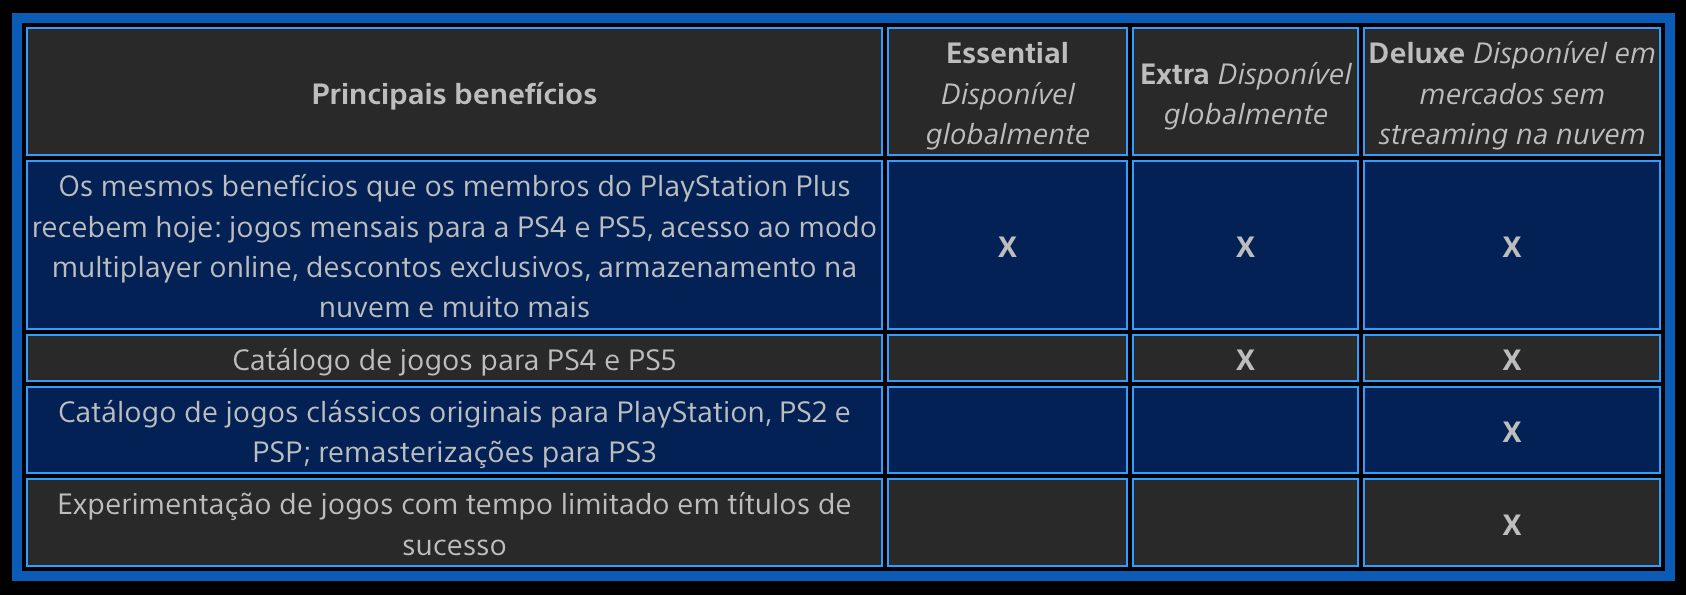 Novo PS Plus: PlayStation divulga guia definitivo do serviço